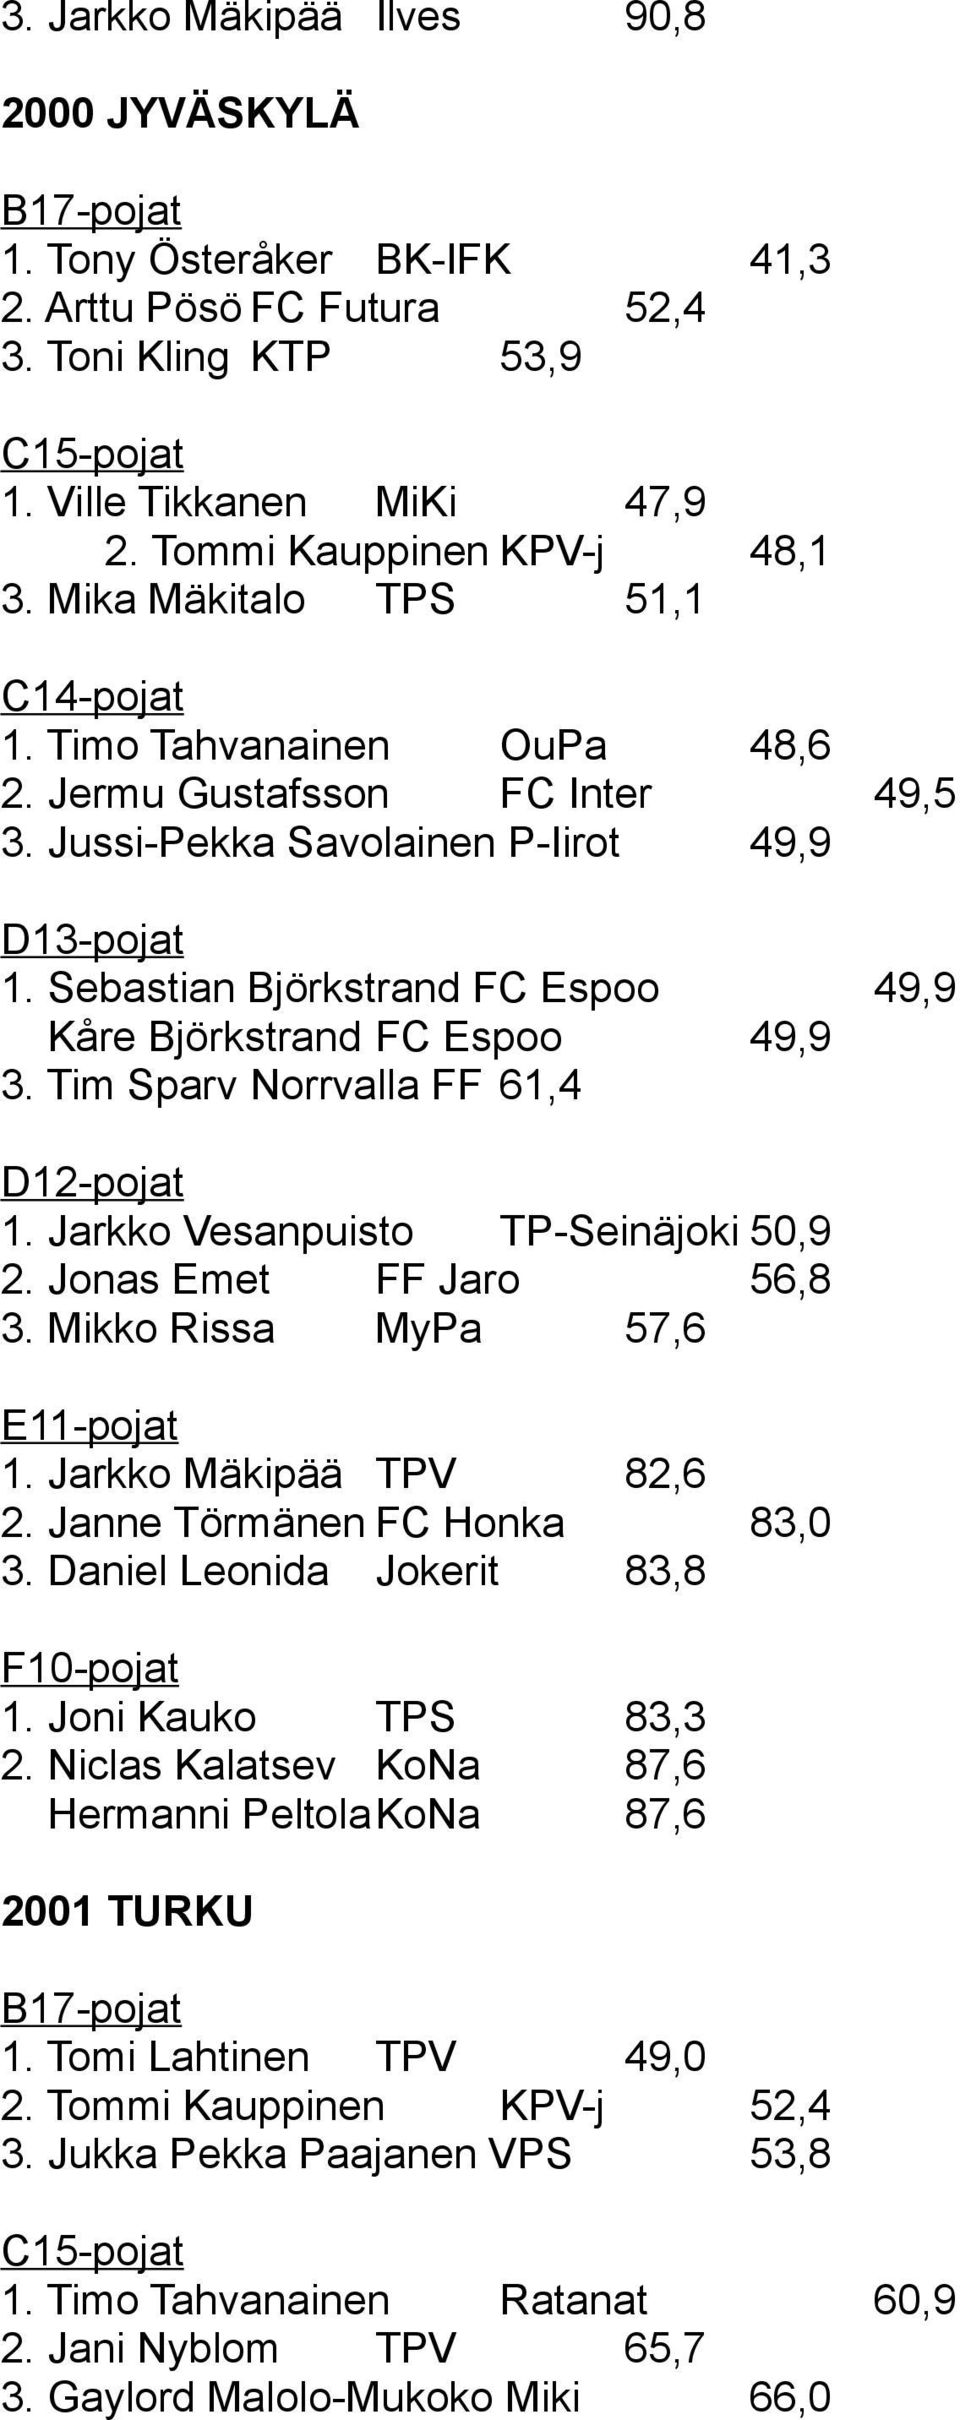 Tim Sparv Norrvalla FF 61,4 1. Jarkko Vesanpuisto TP-Seinäjoki 50,9 2. Jonas Emet FF Jaro 56,8 3. Mikko Rissa MyPa 57,6 1. Jarkko Mäkipää TPV 82,6 2. Janne Törmänen FC Honka 83,0 3.